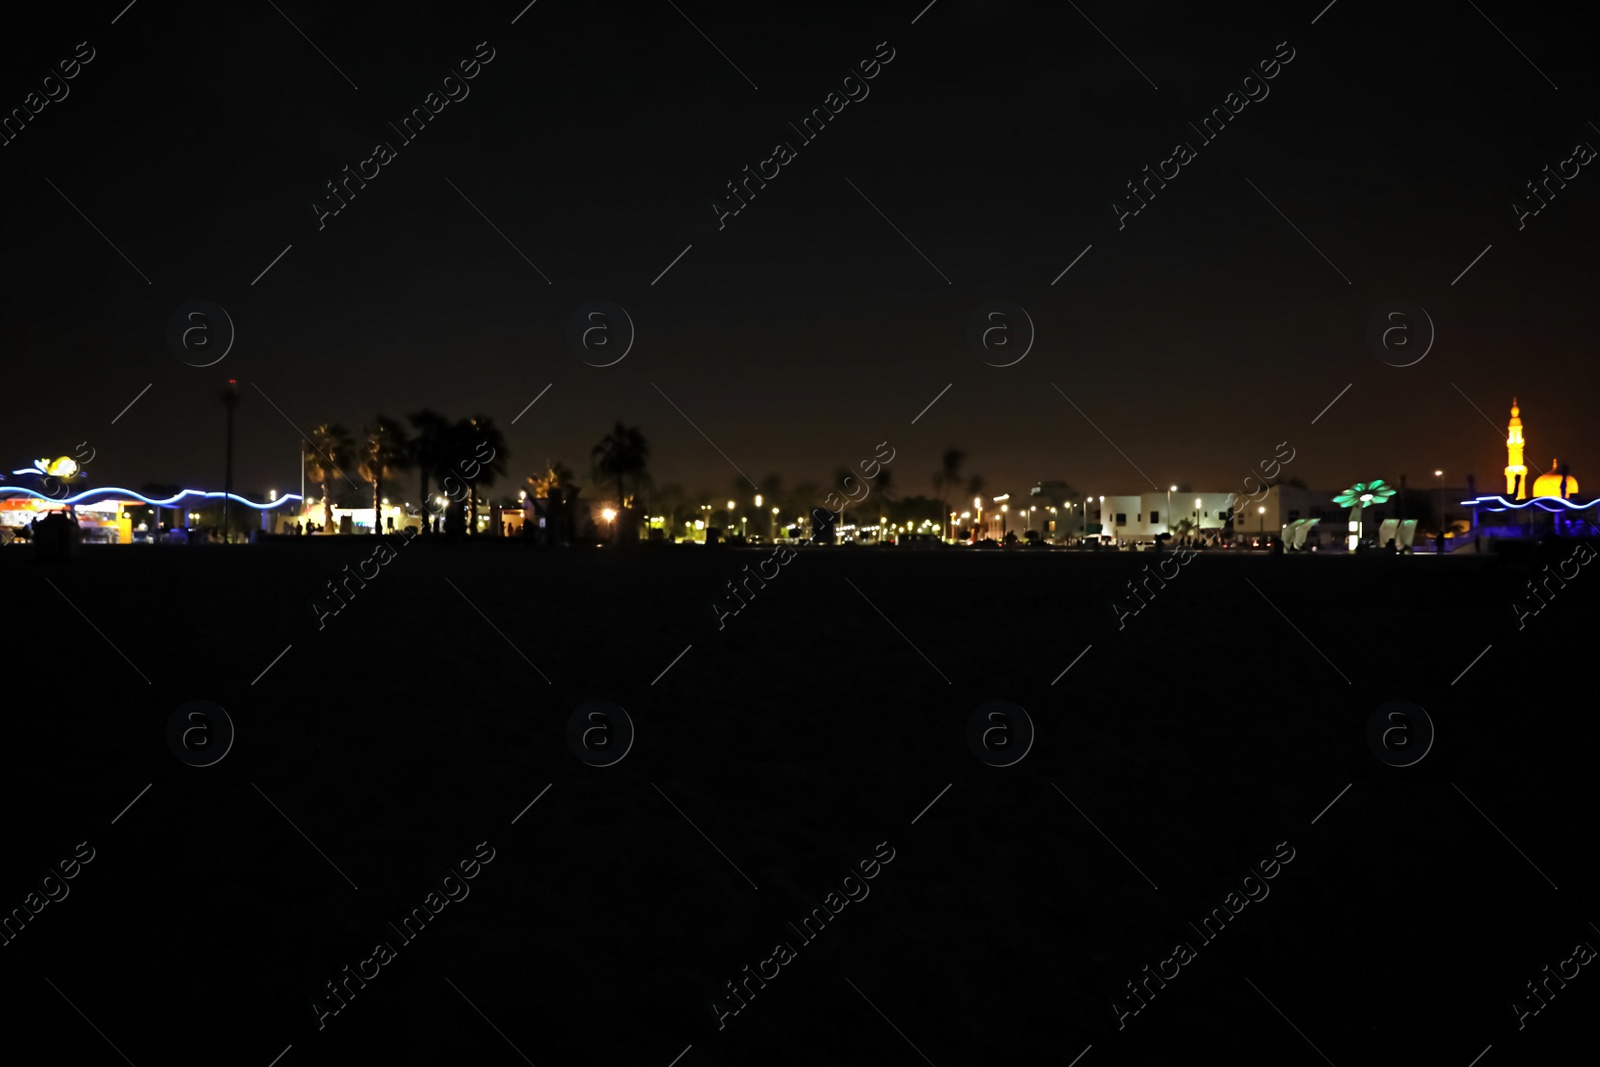 Photo of DUBAI, UNITED ARAB EMIRATES - NOVEMBER 03, 2018: Night landscape with illuminated city